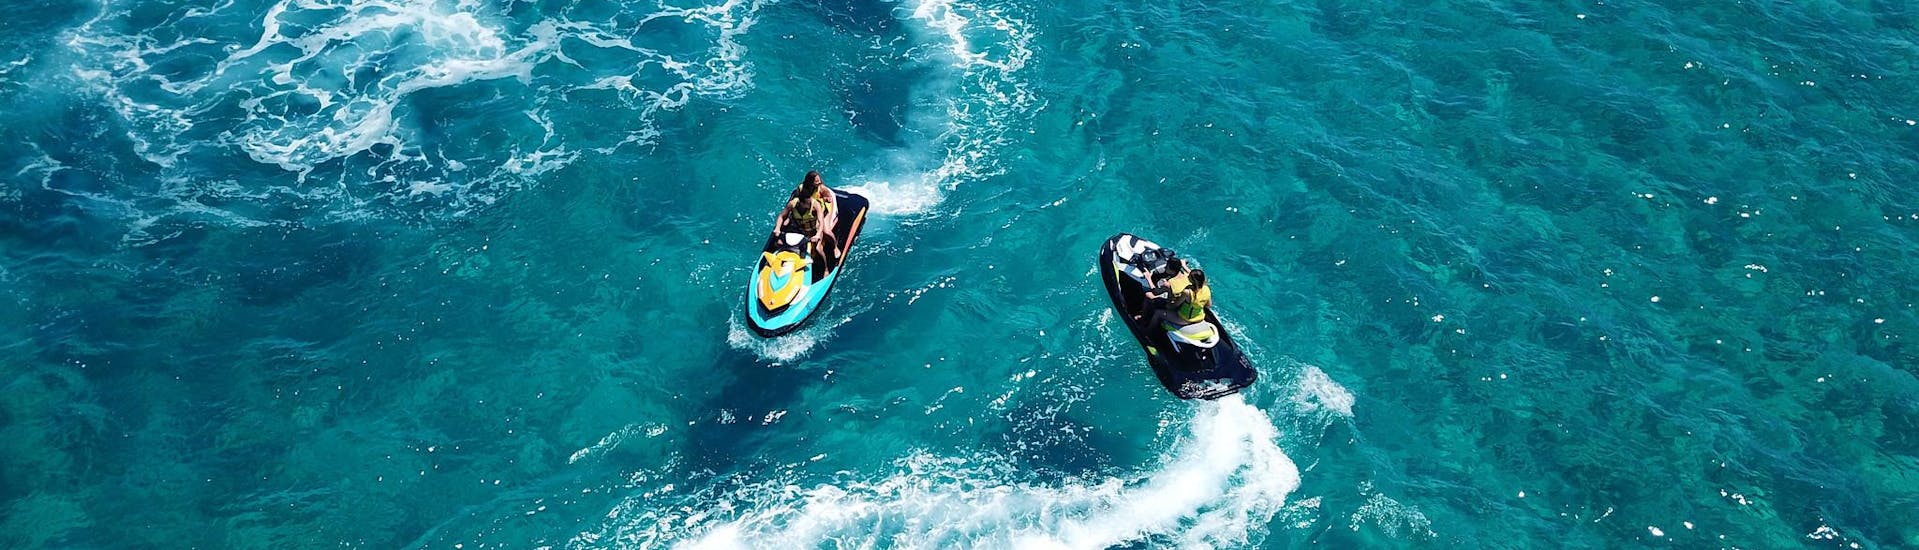 Gente divirtiéndose en una moto acuática durante una excursión en moto acuática.